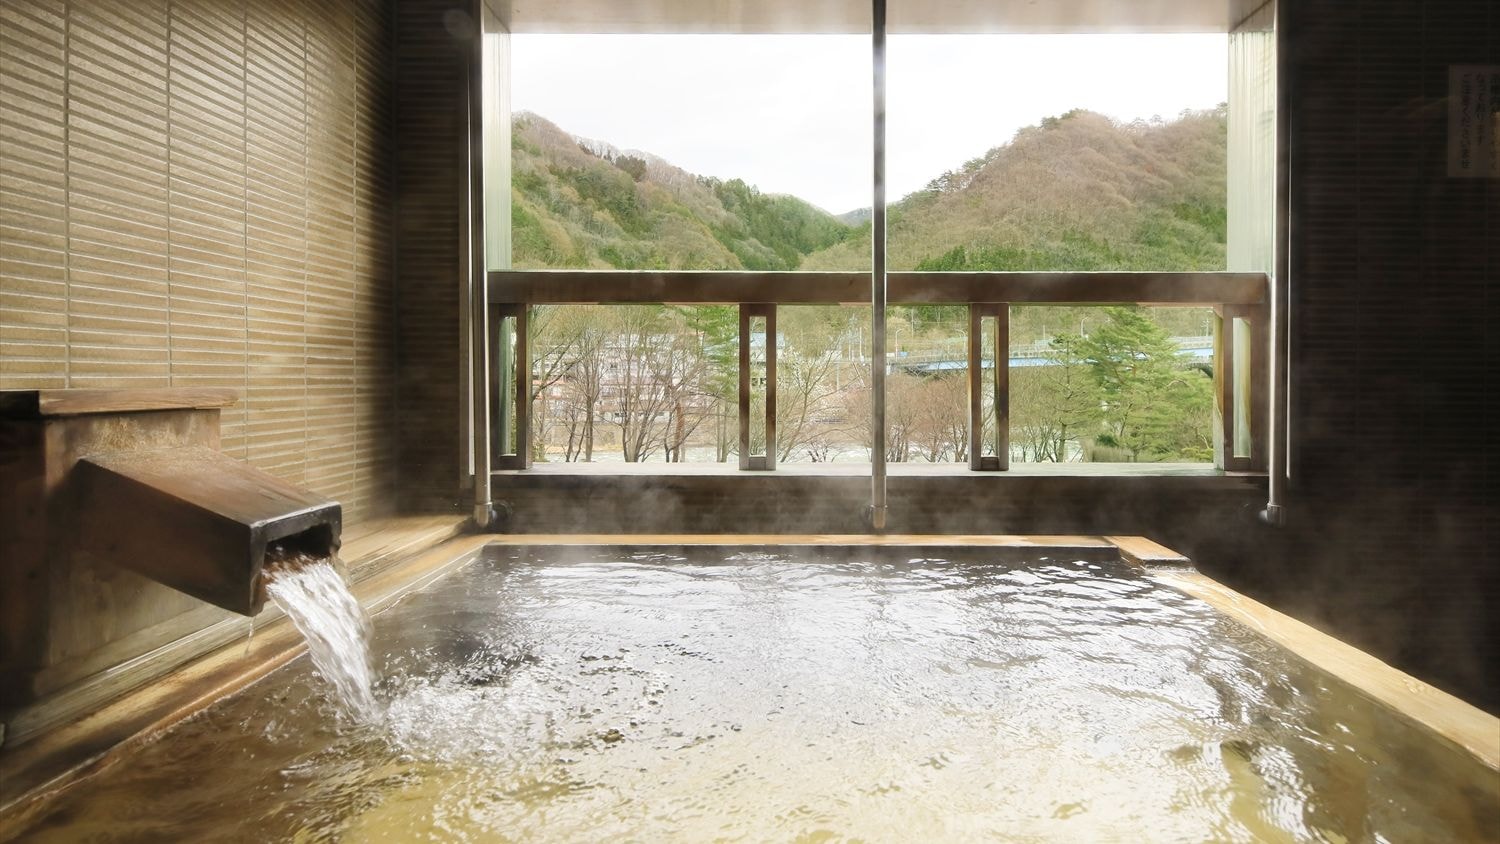 [帶露天浴池的房間、禁煙] 100%天然溫泉 帶露天浴池的日西合璧房間